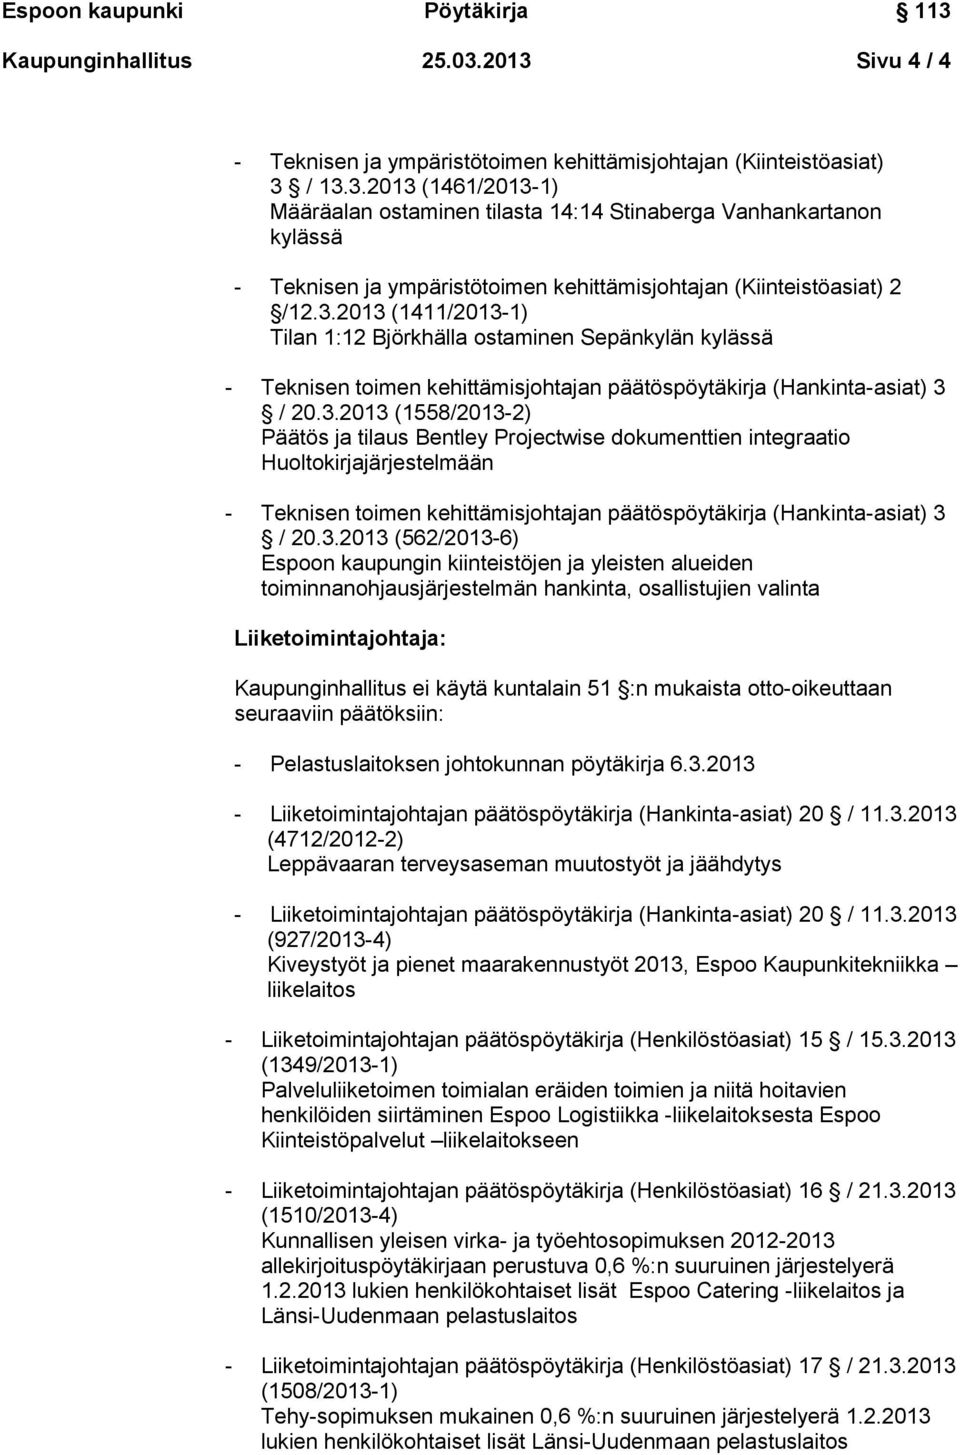 3.2013 (562/2013-6) Espoon kaupungin kiinteistöjen ja yleisten alueiden toiminnanohjausjärjestelmän hankinta, osallistujien valinta Liiketoimintajohtaja: - Pelastuslaitoksen johtokunnan pöytäkirja 6.